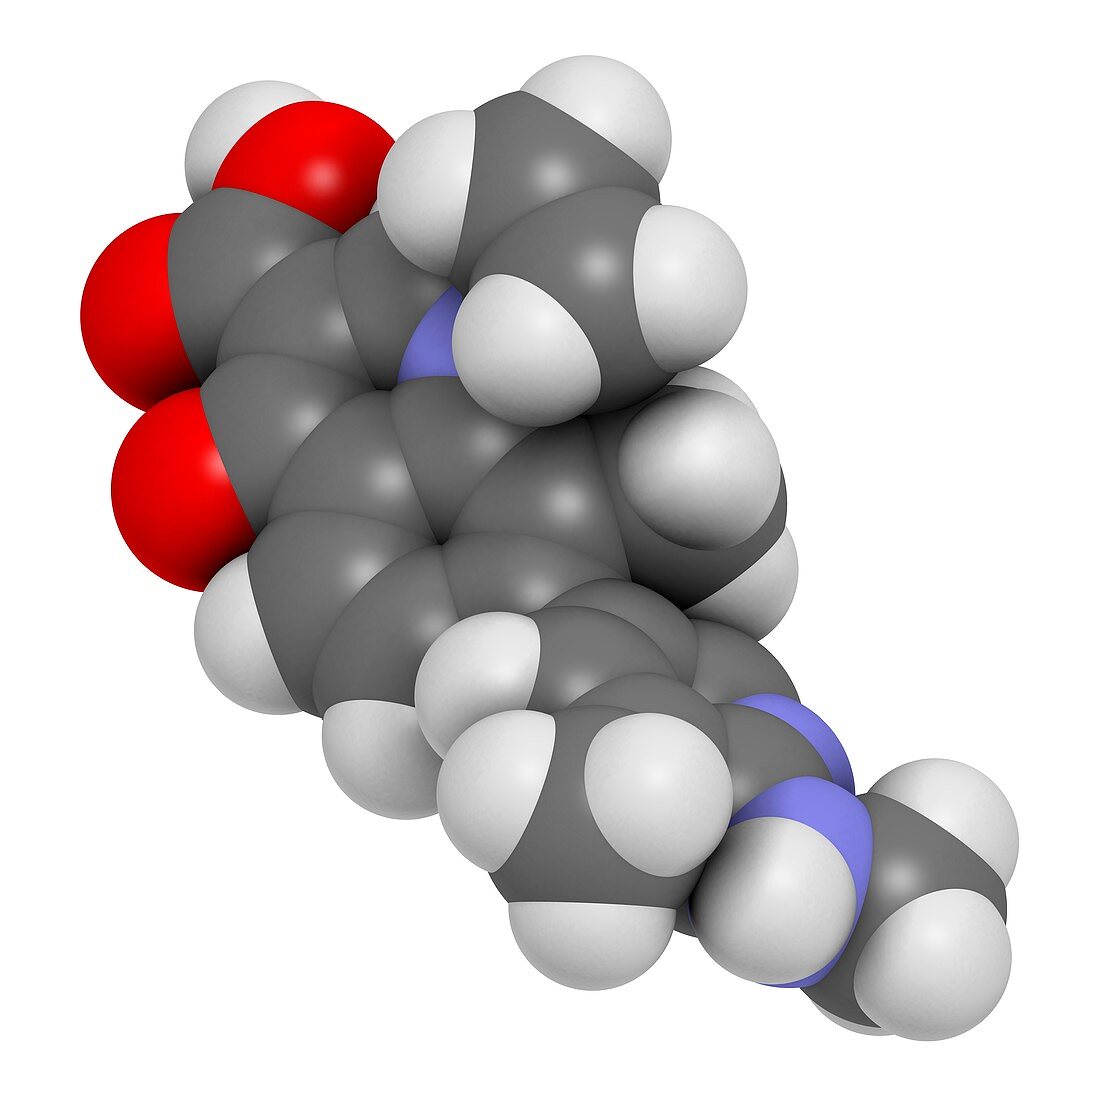 Ozenoxacin antibiotic drug molecule